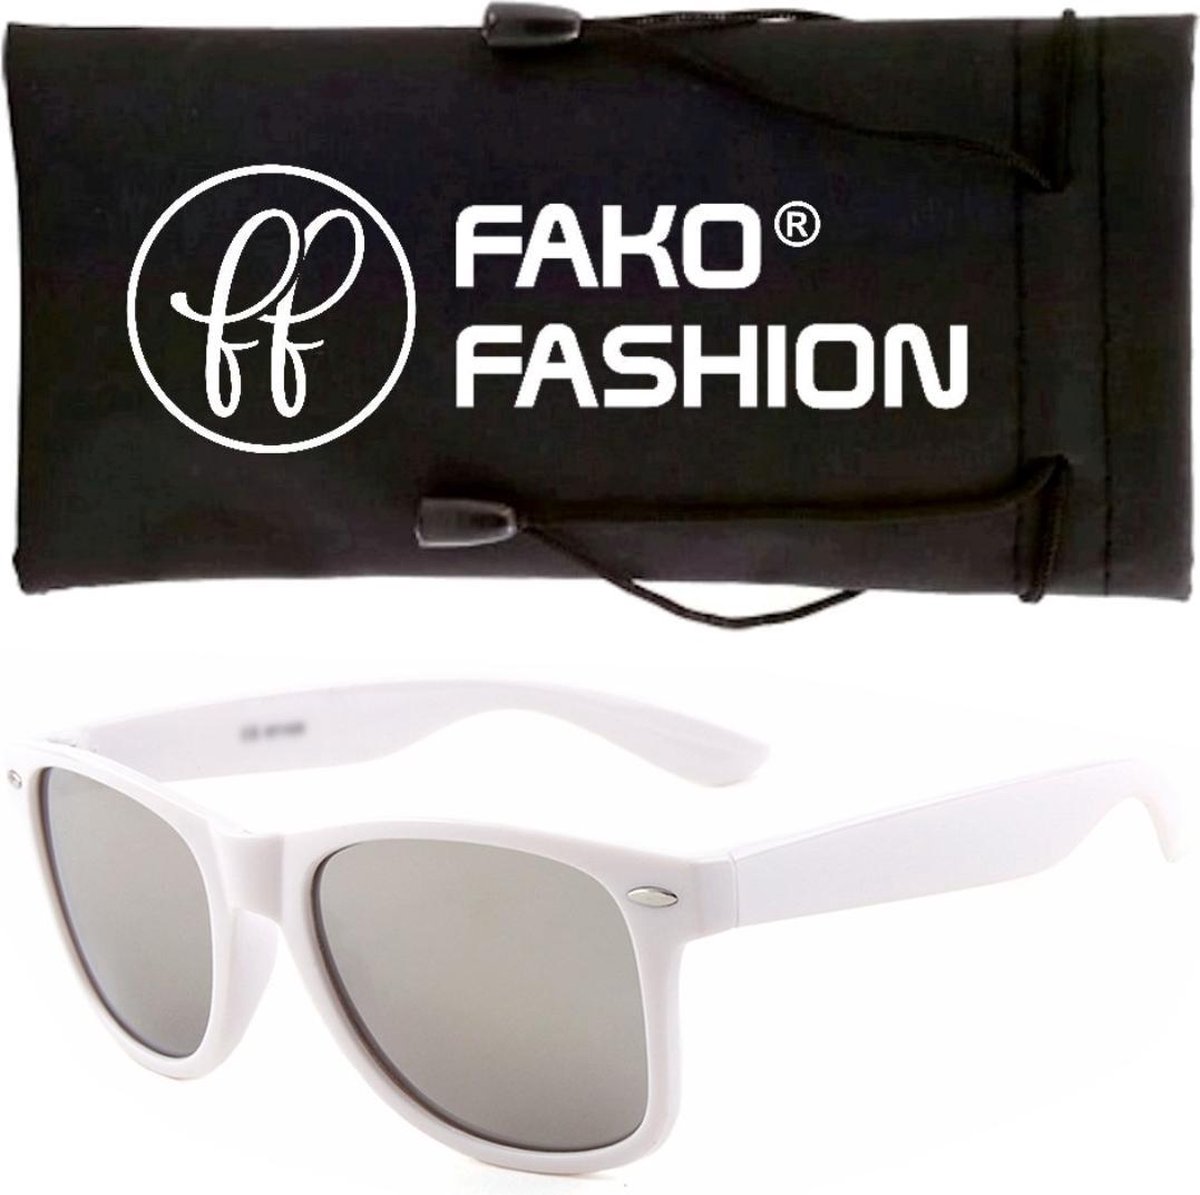 Fako Fashion® - Zonnebril - Wit - Spiegel Zilver